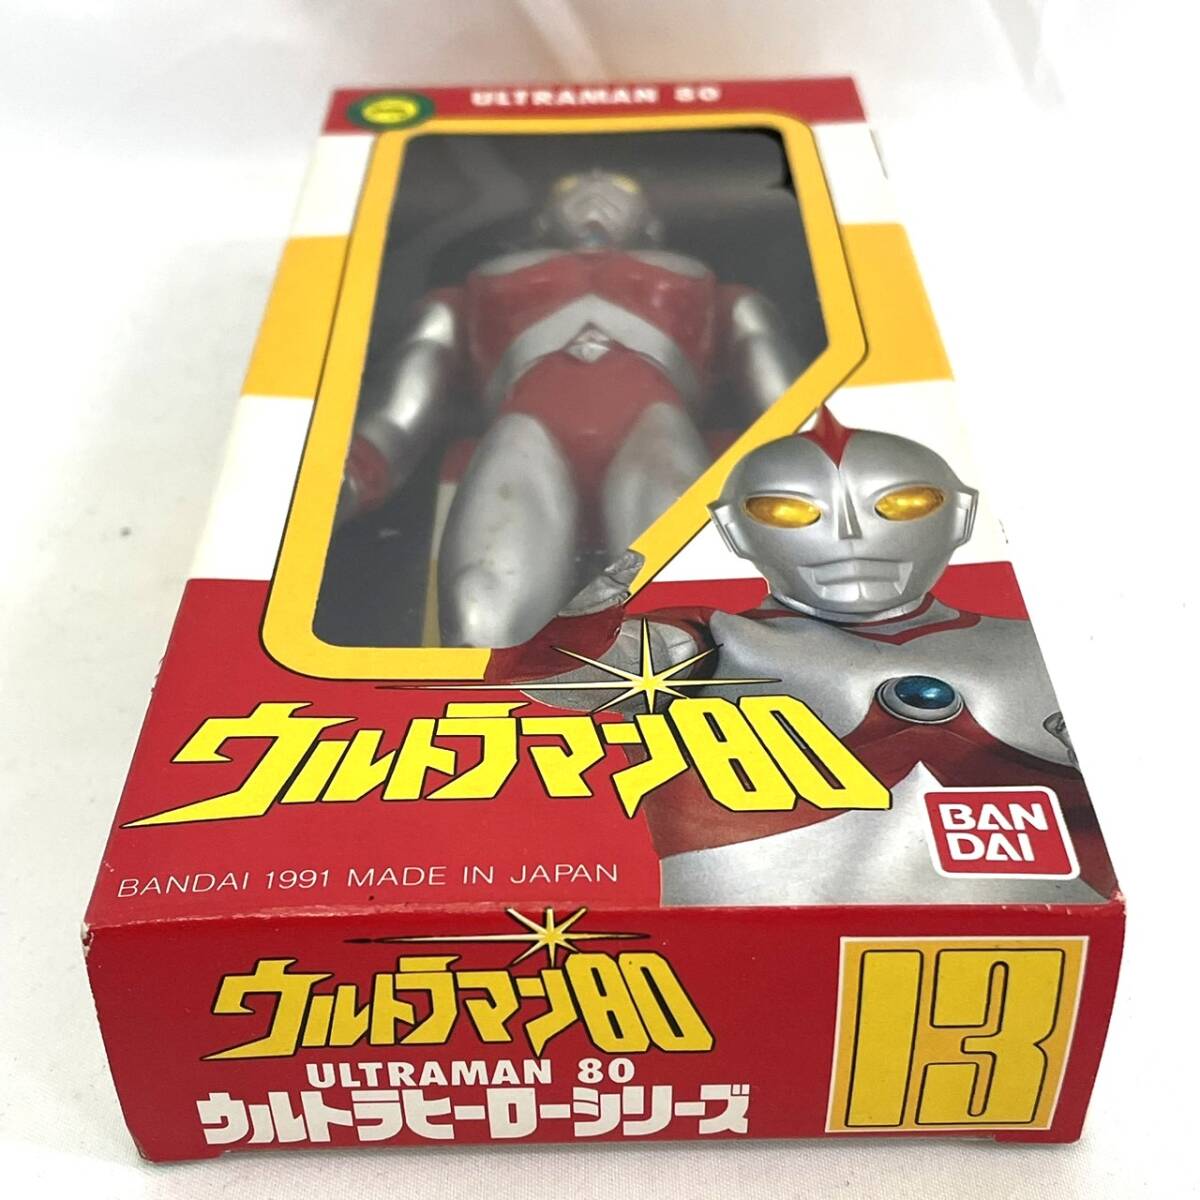 [4917]BANDAI Bandai Ultra герой серии 13[ Ultraman 80]1991 год производства сделано в Японии sofvi фигурка кукла Vintage редкость с ящиком 